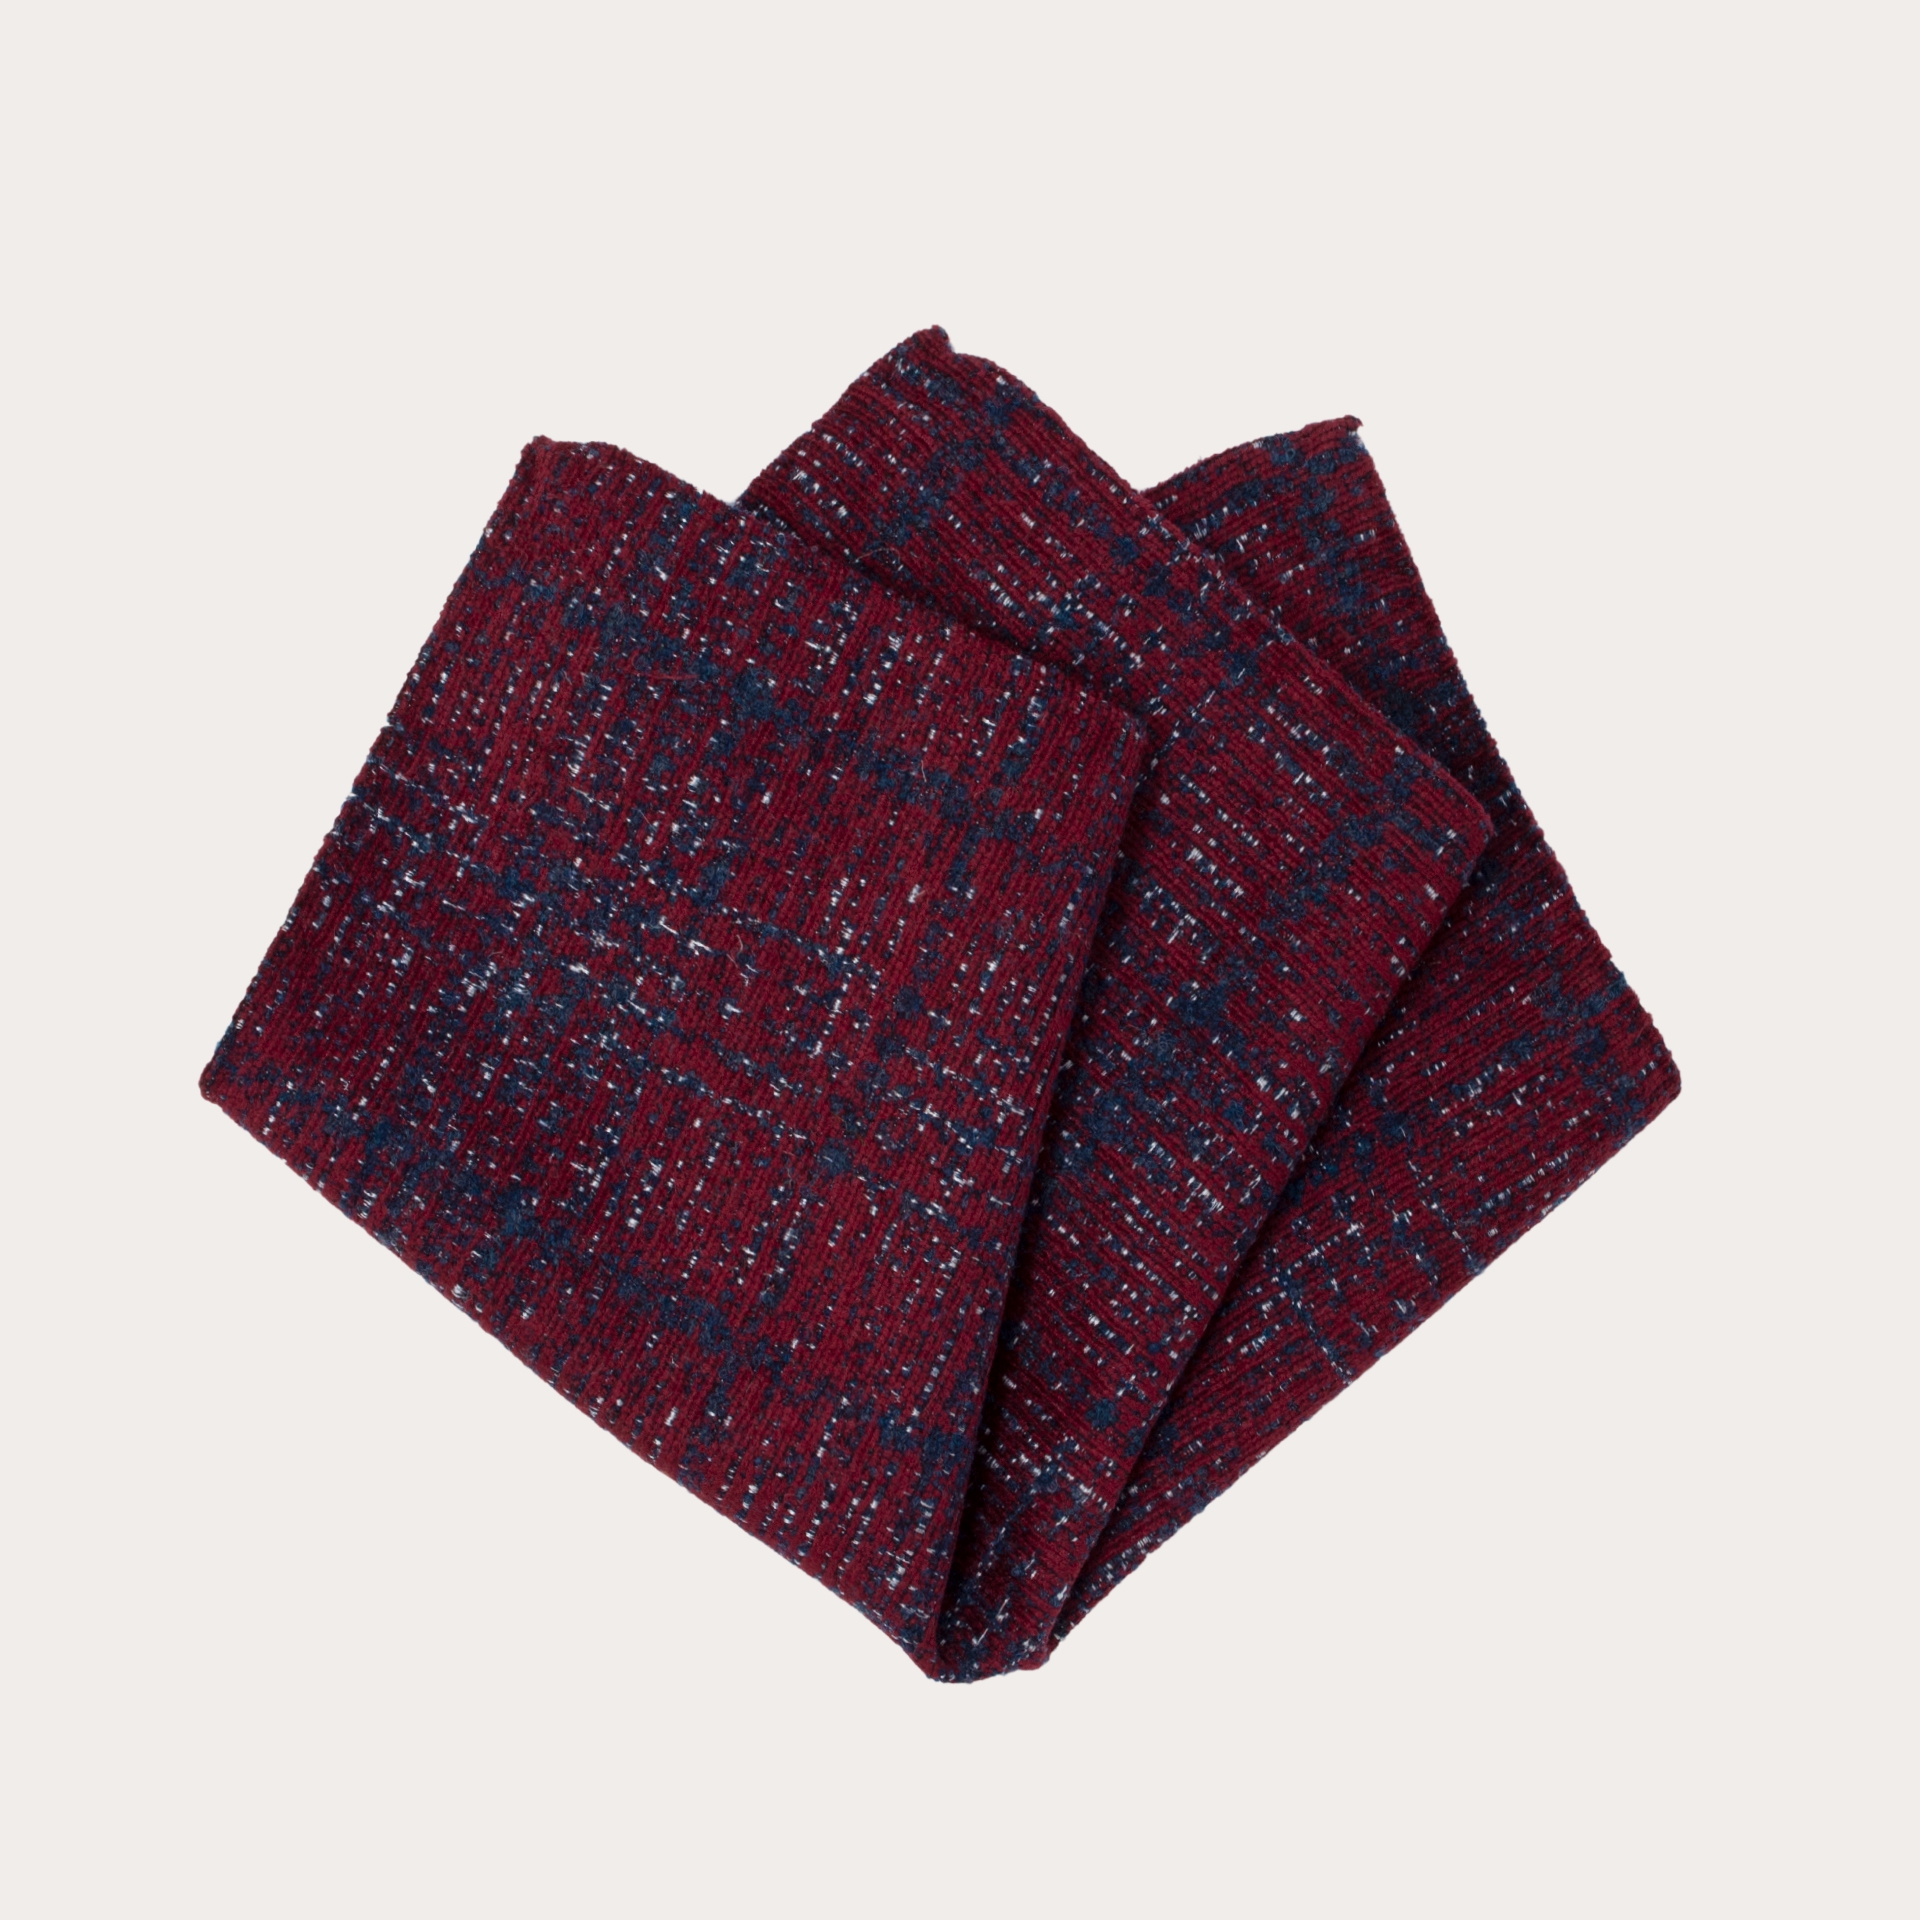 Momento sequía Residuos Pañuelo de bolsillo en seda y lana, estampado tartán rojo azul